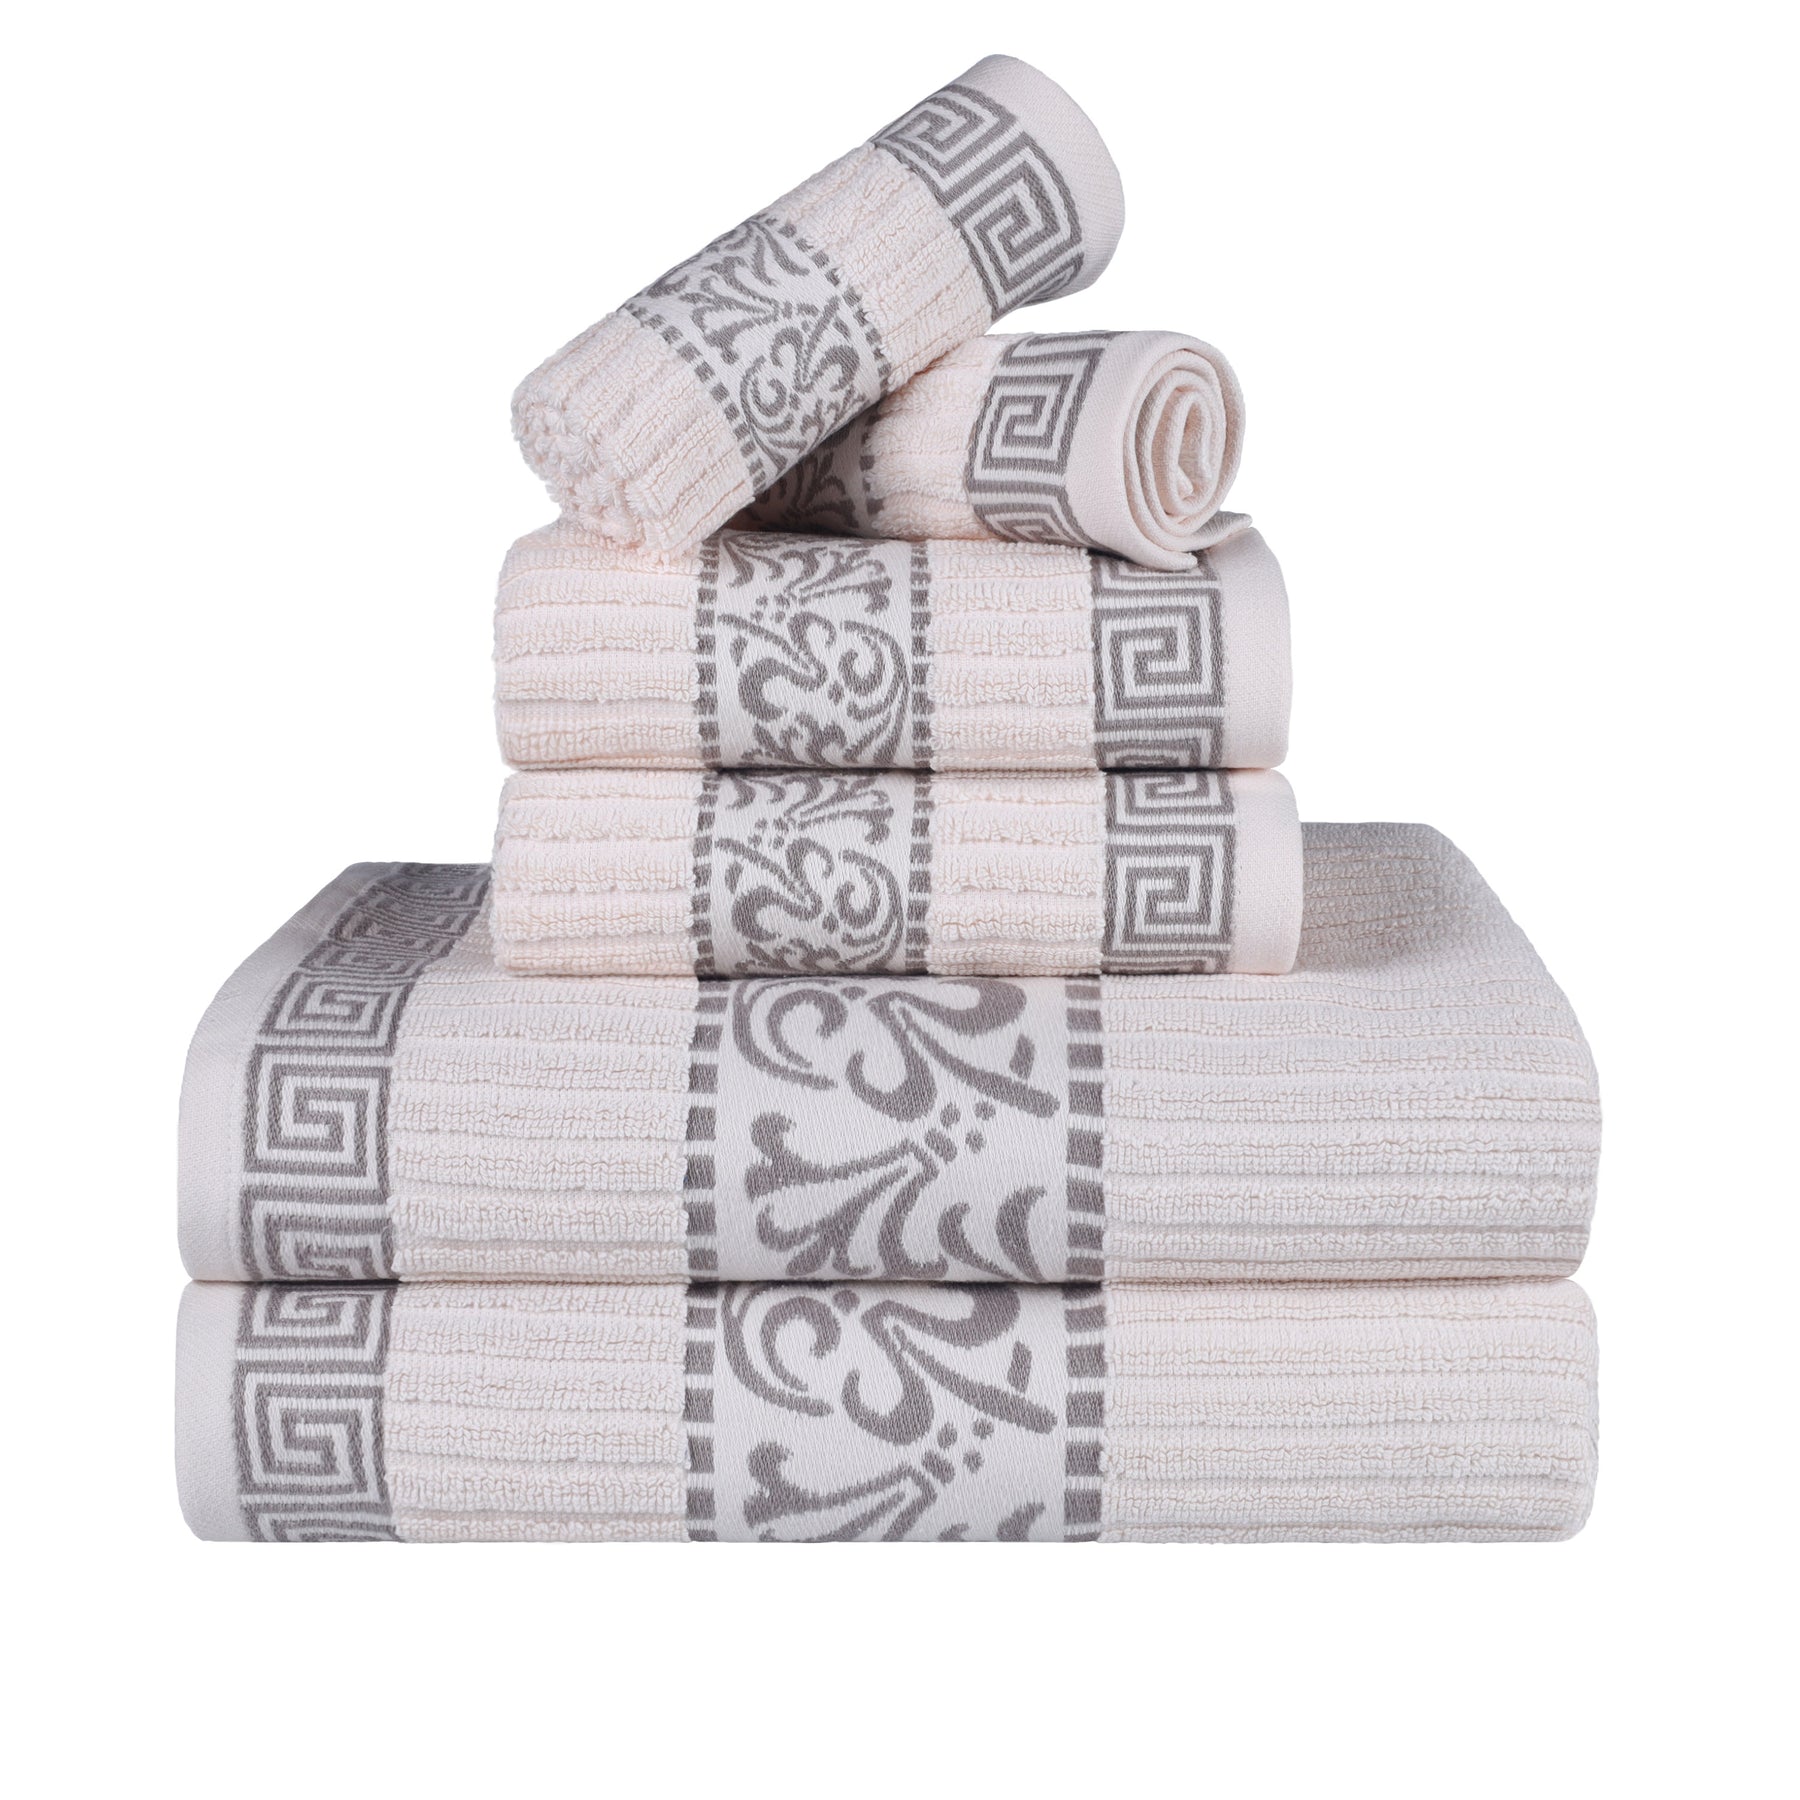 Superior 6-Piece Athens Cotton Towel Set, 6 PC Set